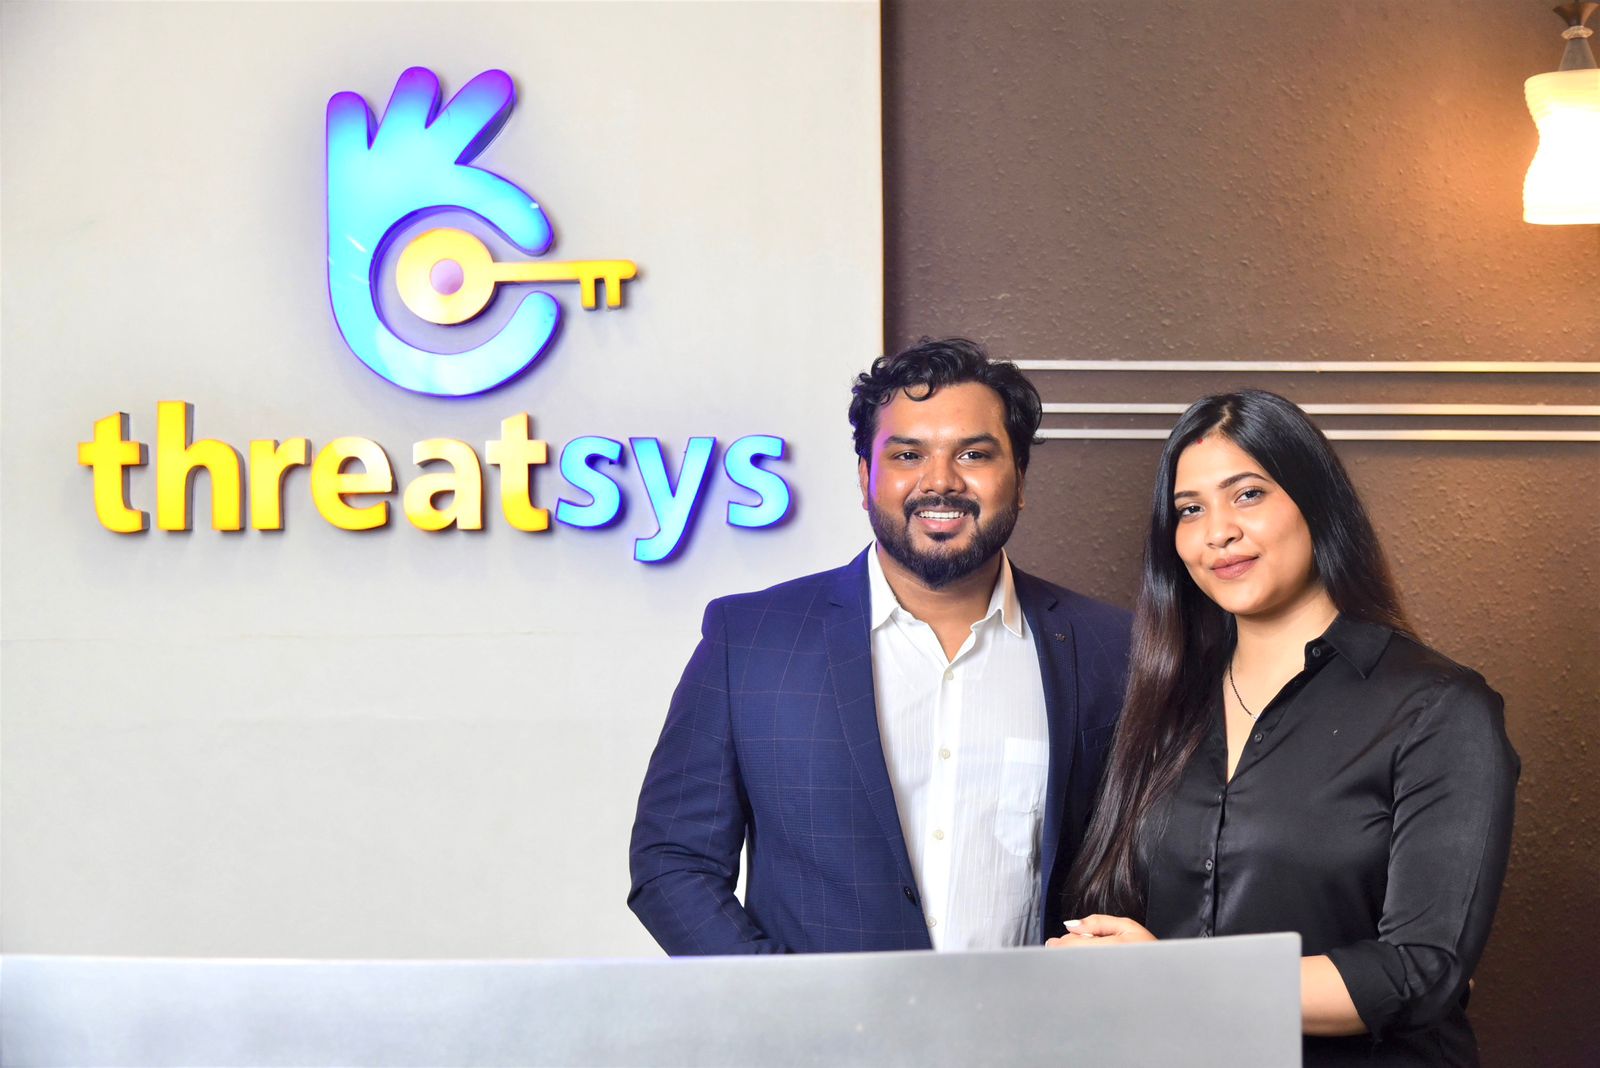 Threatsys's Revenue has grown by 50%, Says CEO Deepak Kumar Nath